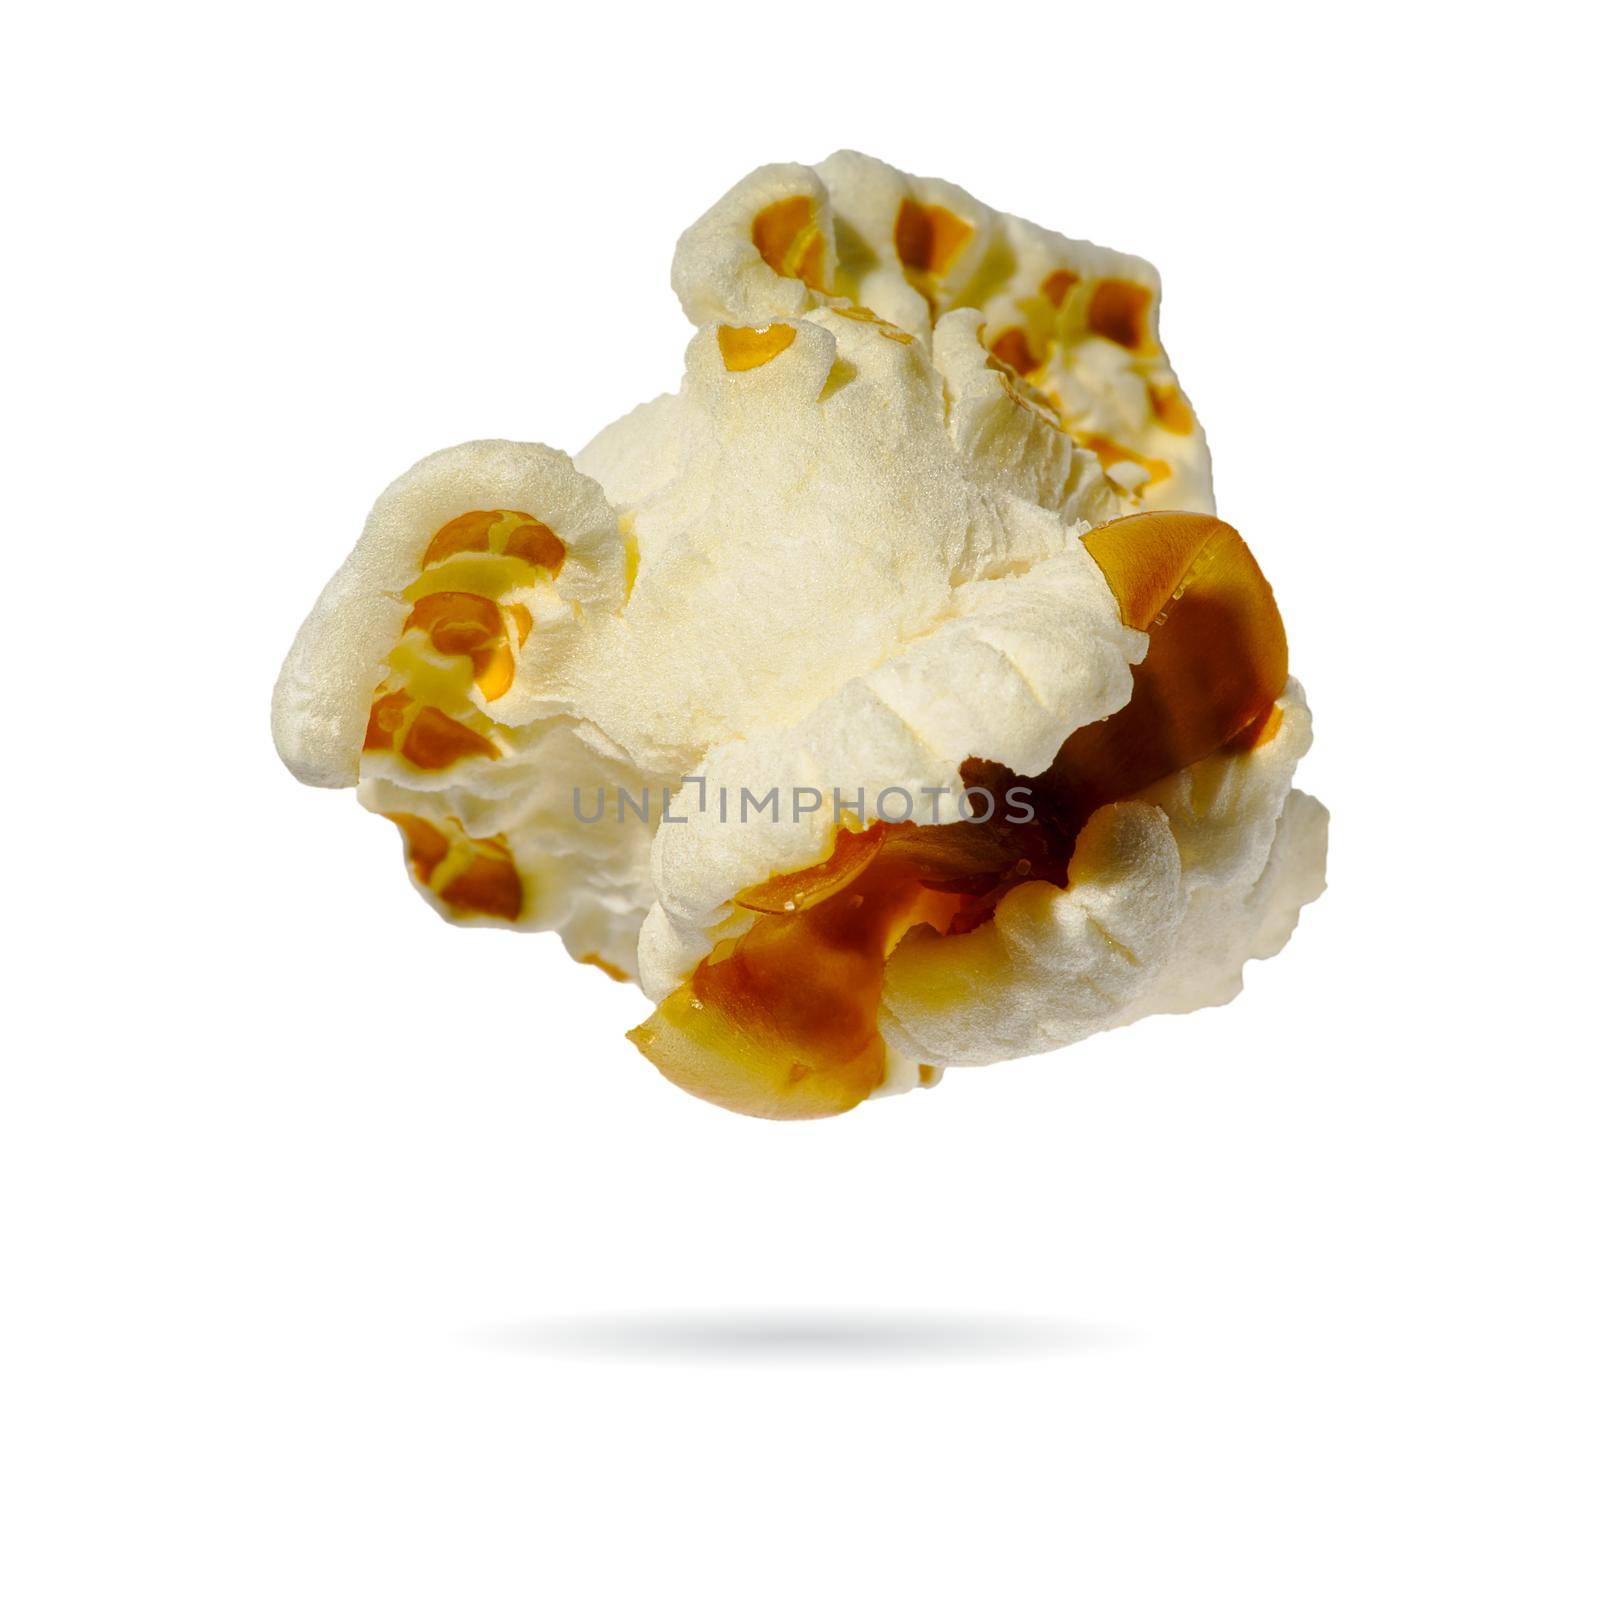 Popcorn isolated on white. macro shoot of popcorn. by PhotoTime